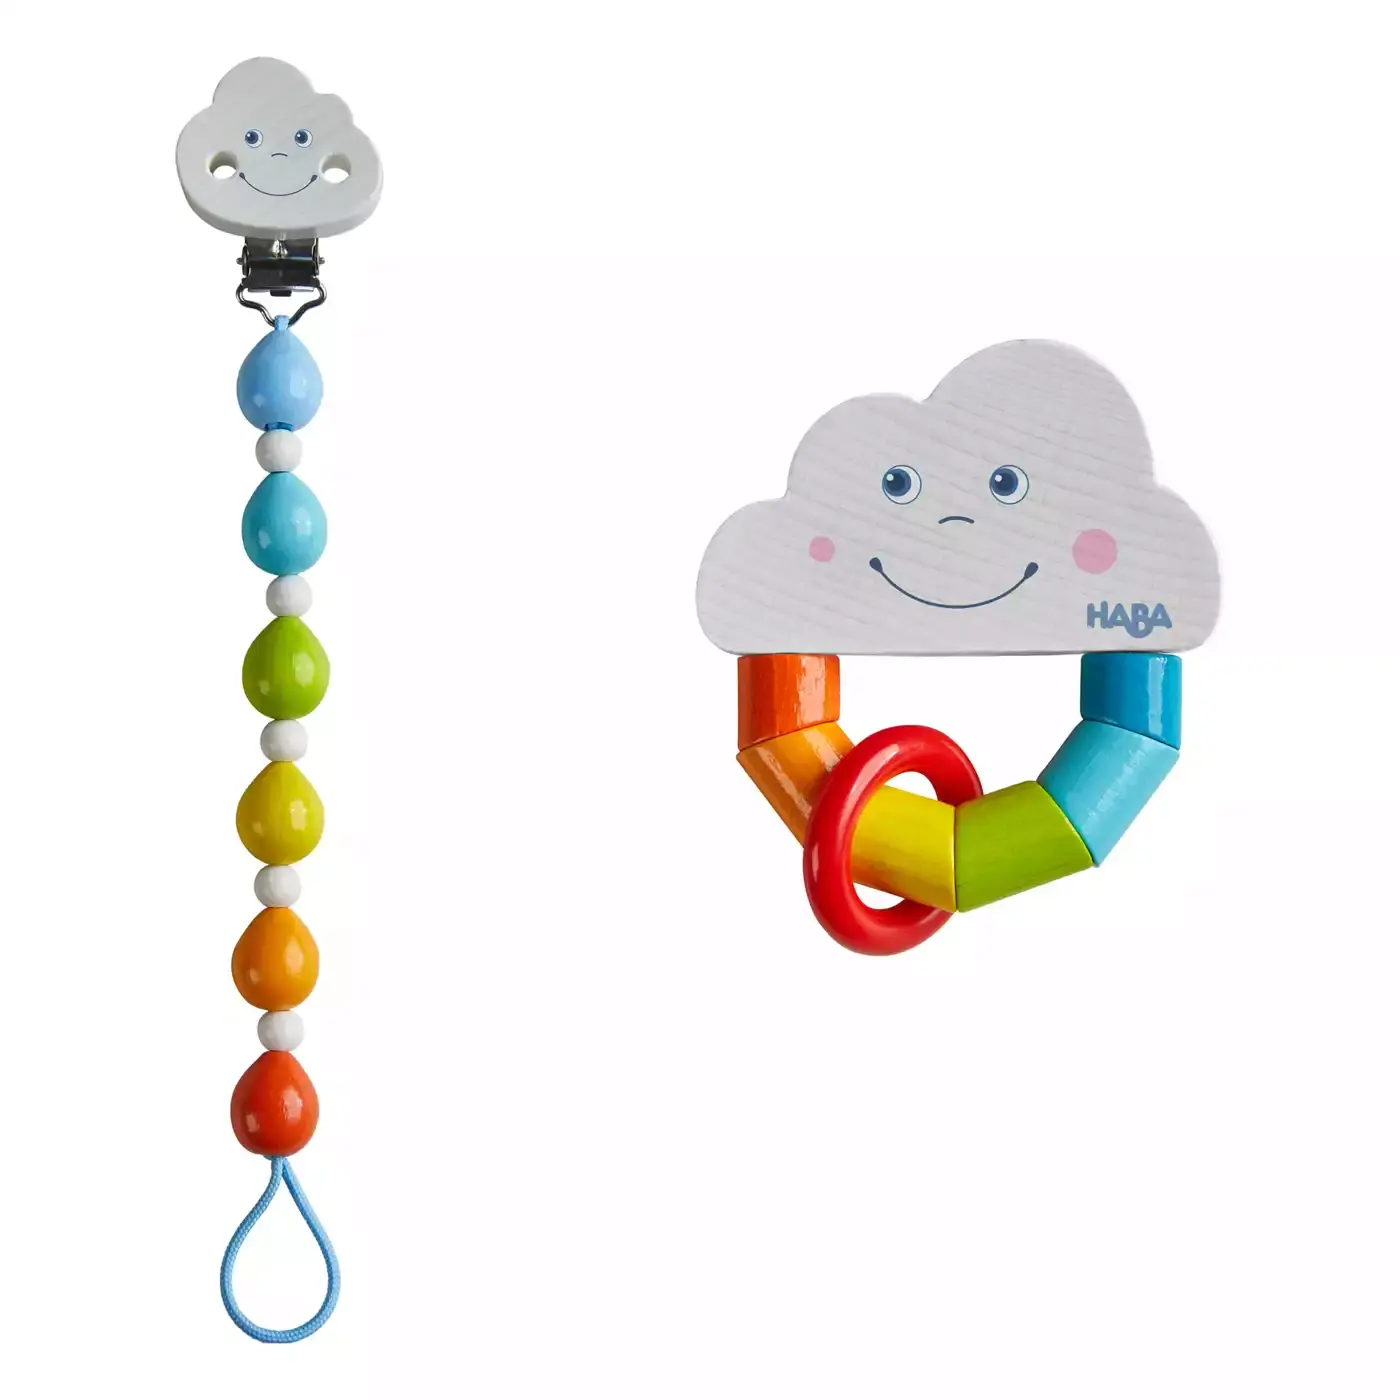 Babygeschenk-Set Regenbogenwelt HABA mehrfarbig Mehrfarbig Mehrfarbig 2000580416008 1